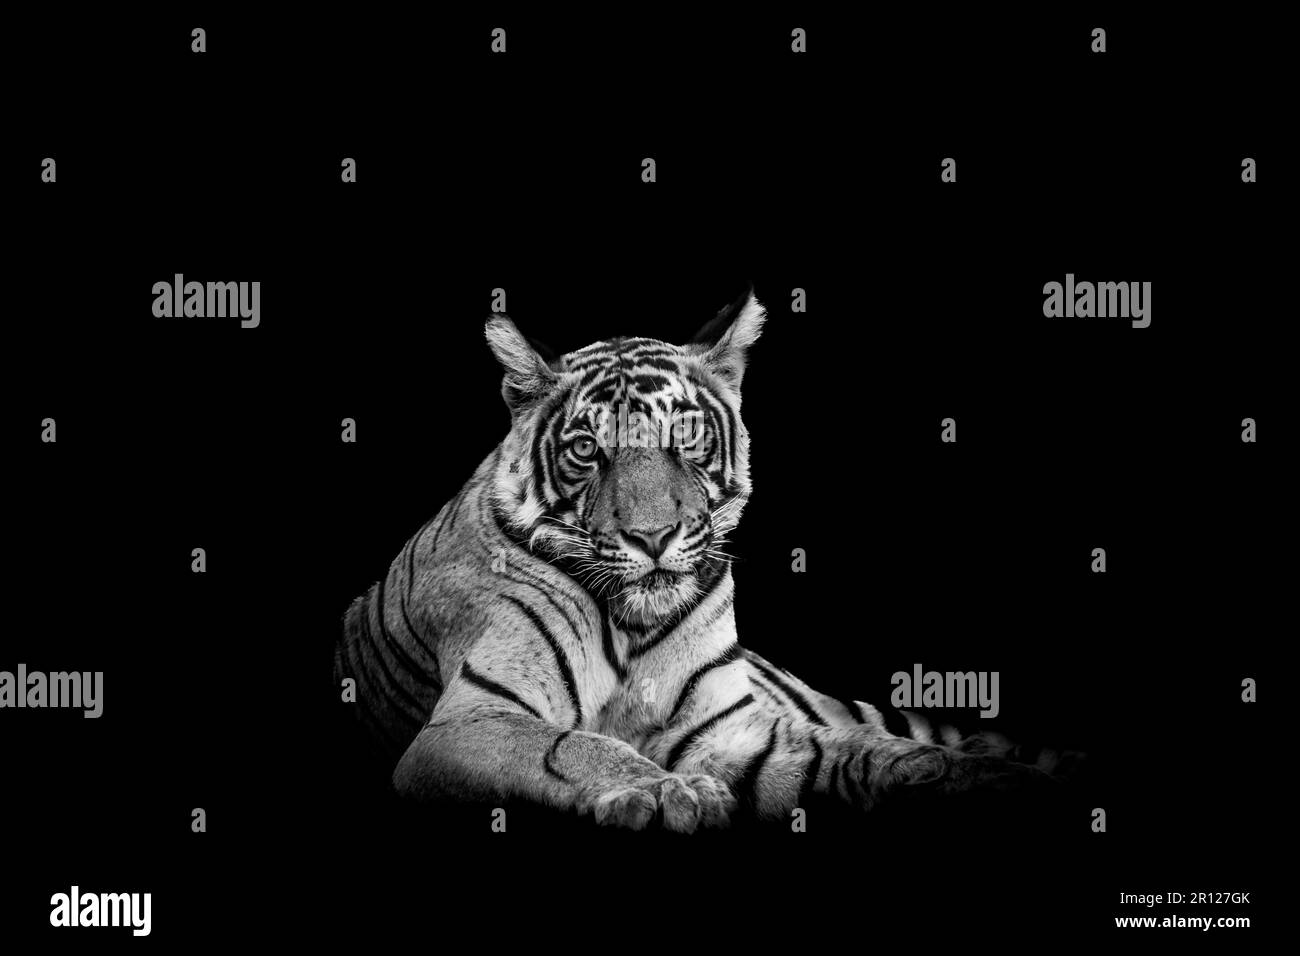 Tigre de bengala macho salvaje o primer plano panthera tigris Imagen de arte fino o retrato en fondo blanco y negro durante safari en el parque nacional de ranthambore Foto de stock